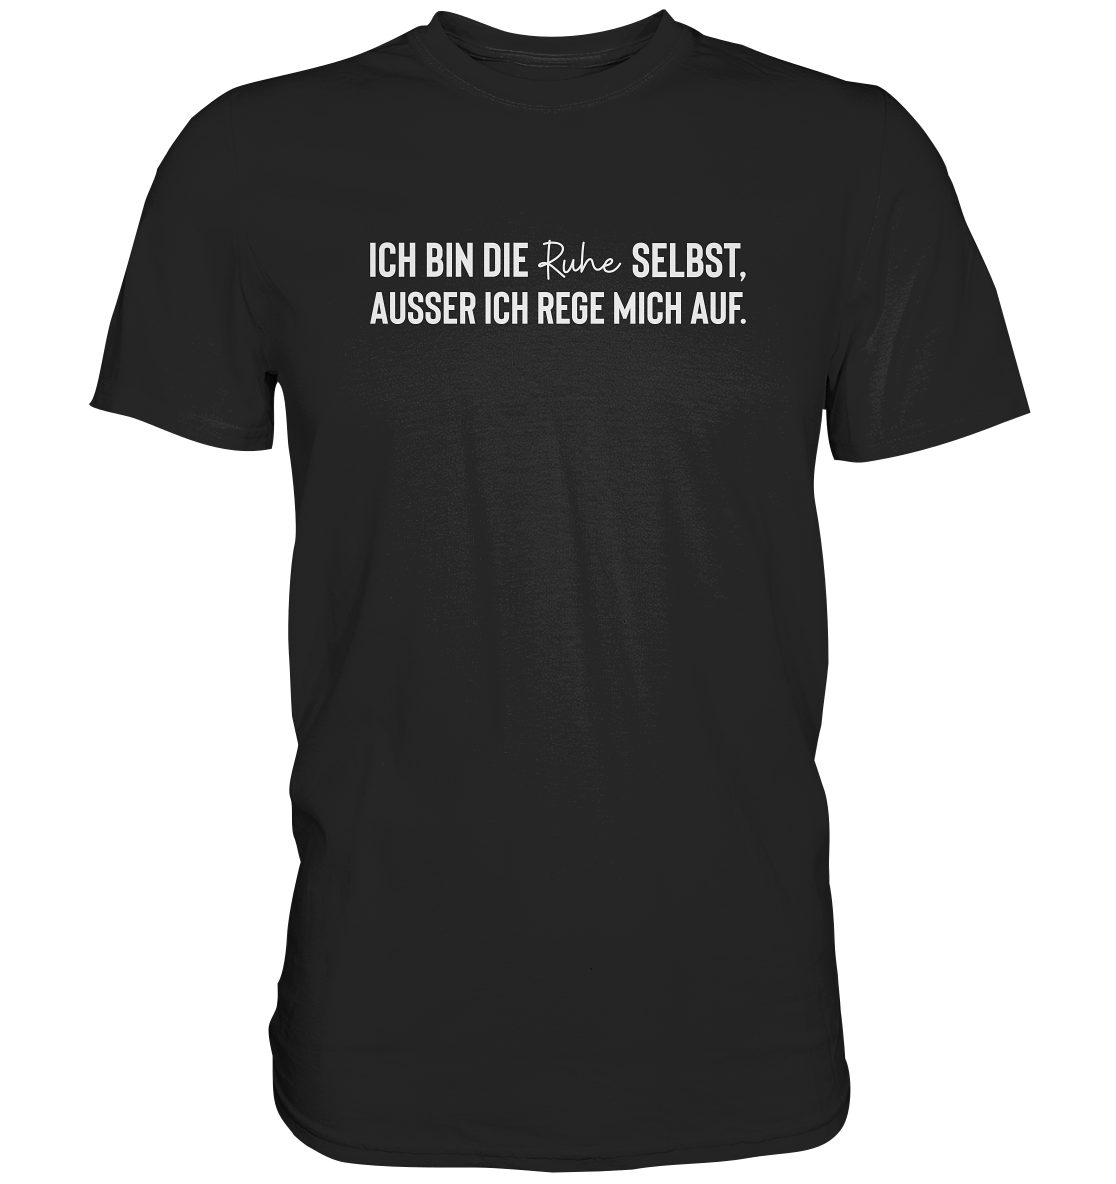 Deutschland, RABUMSEL T-Shirt Waschbeständigkeit, Farbbrillianz in Hohe Bedruckt Hohe